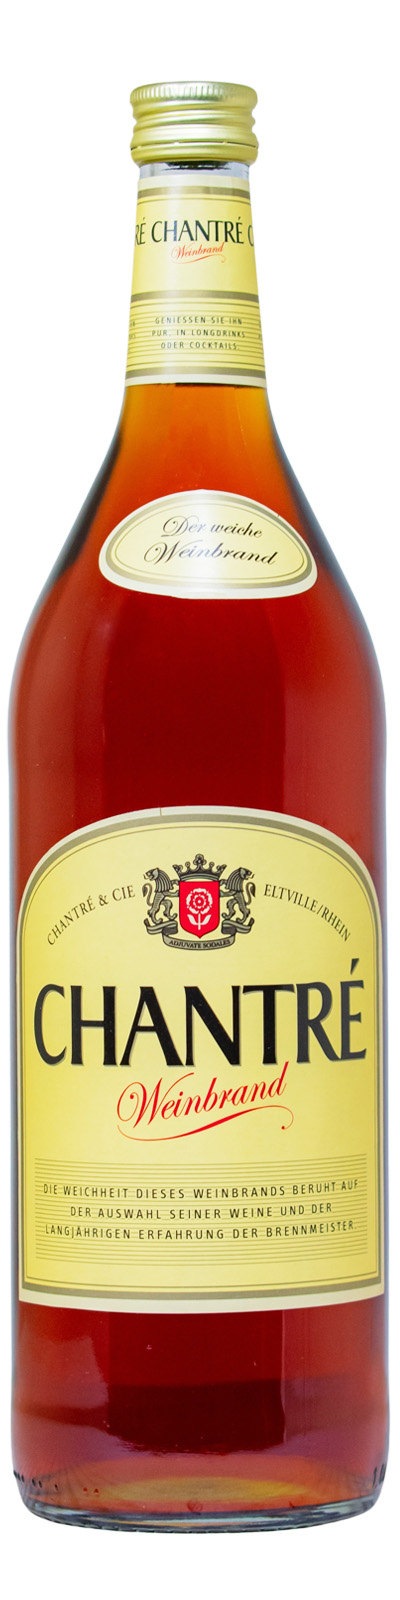 Chantre Weinbrand (1L) günstig kaufen | Weinbrände